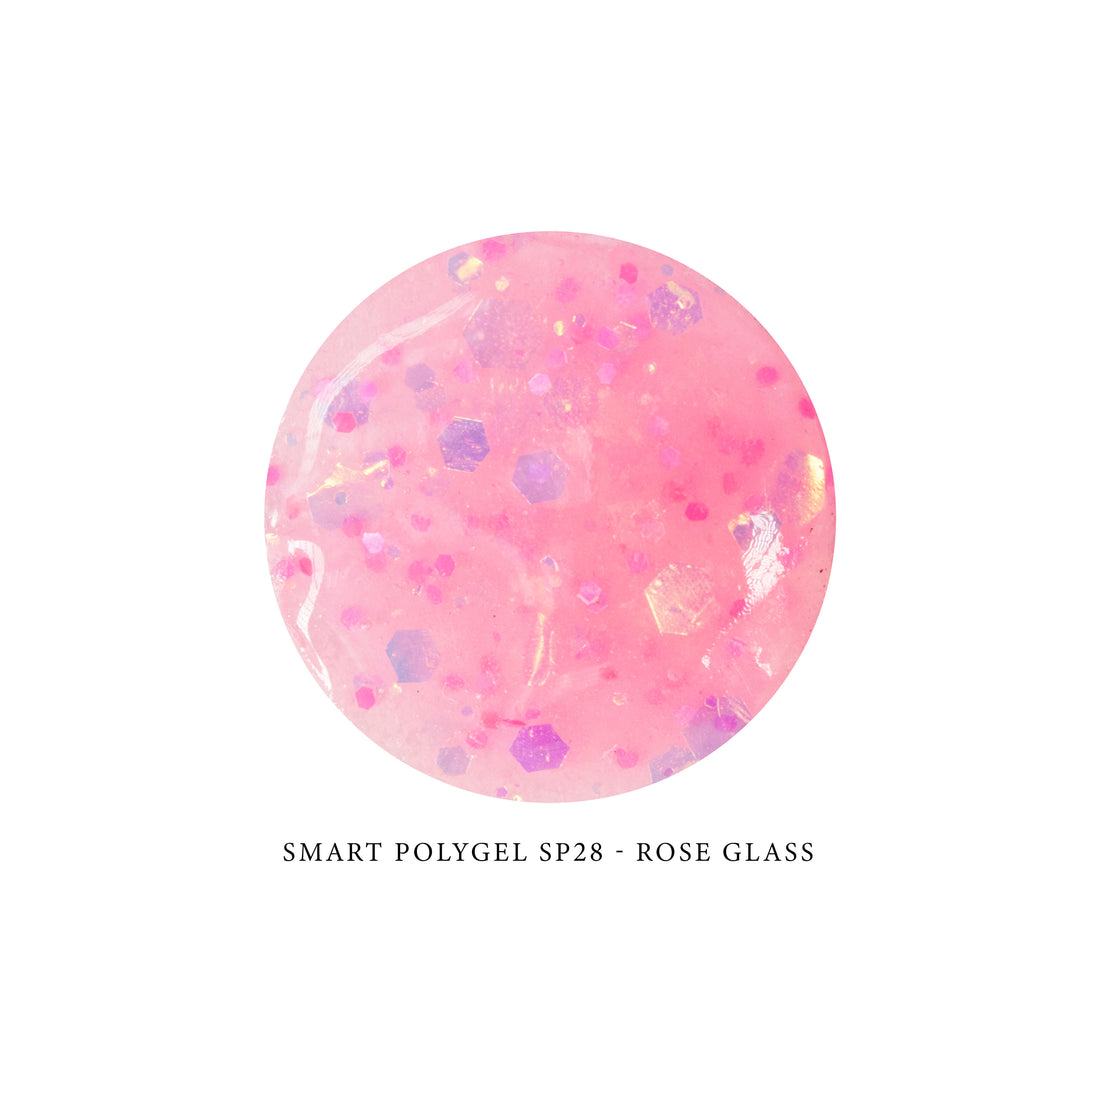 Smart Polygel SP28 - ROSE GLASS 15ml